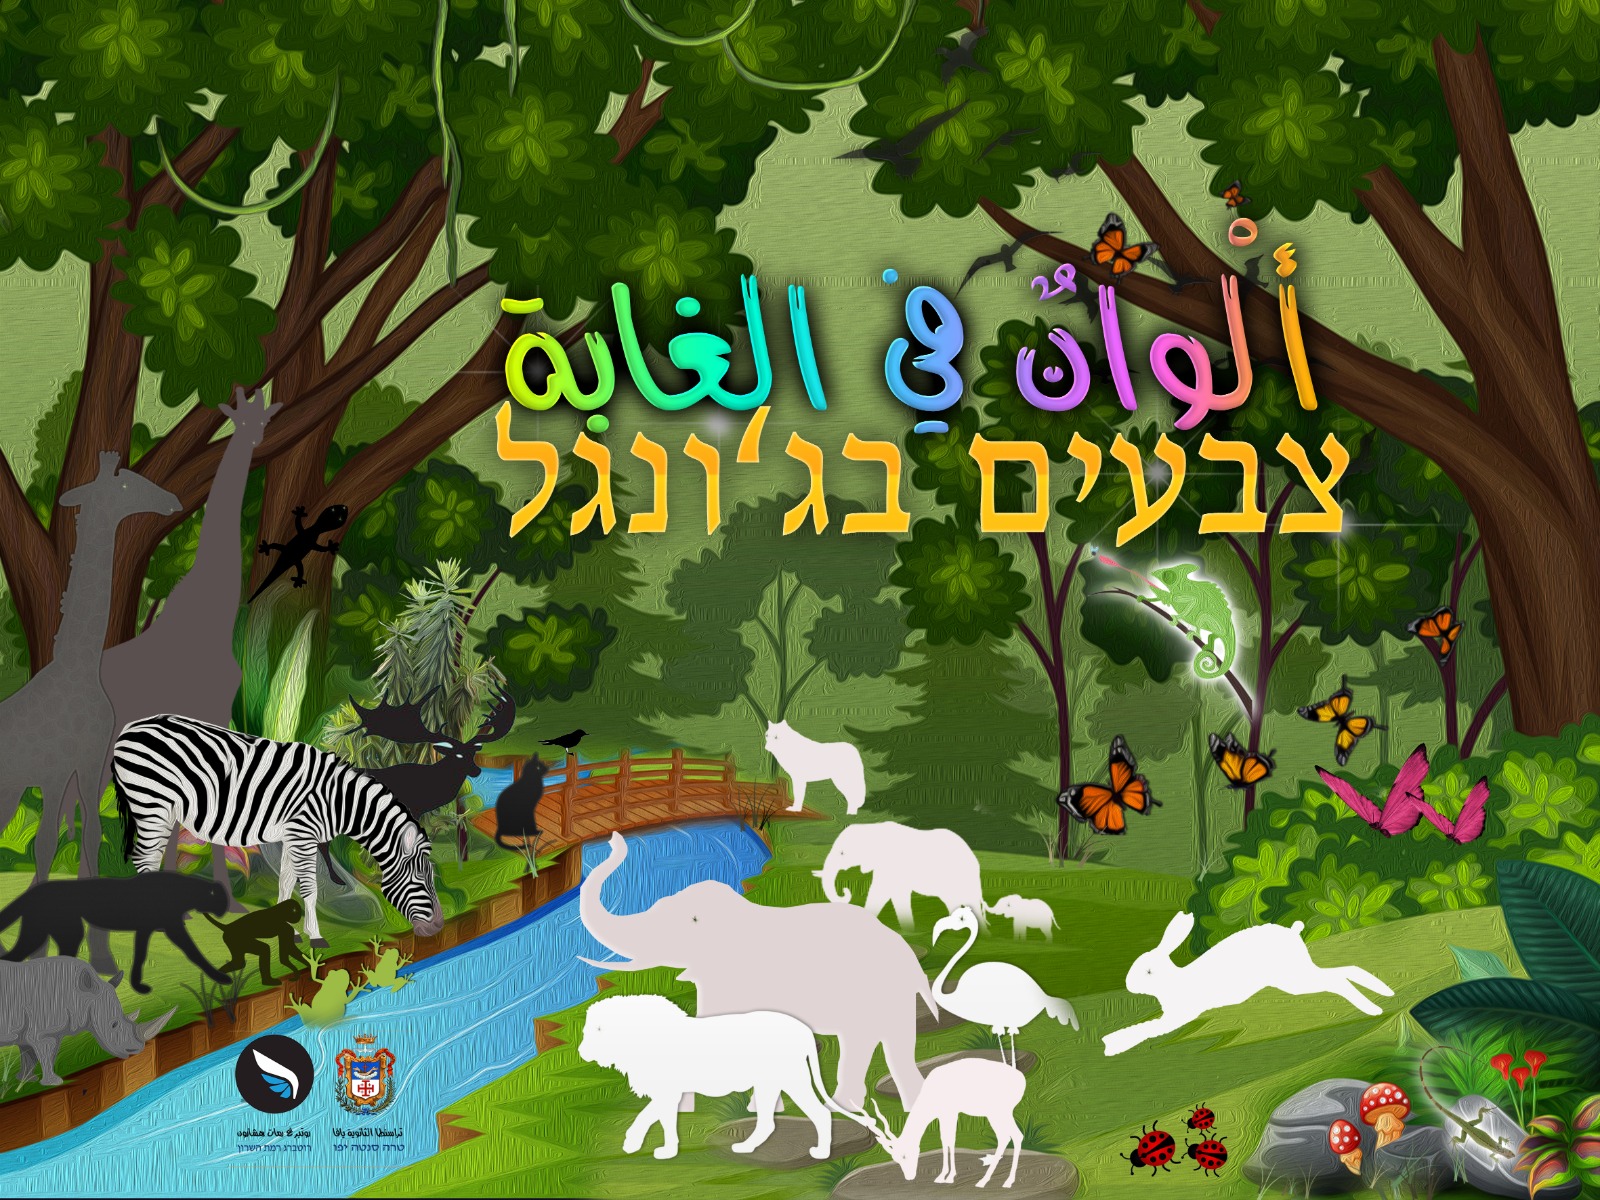 اصدار قصة للأطفال بعنوان ألوان في الغابة باللغتين العربية والعبرية